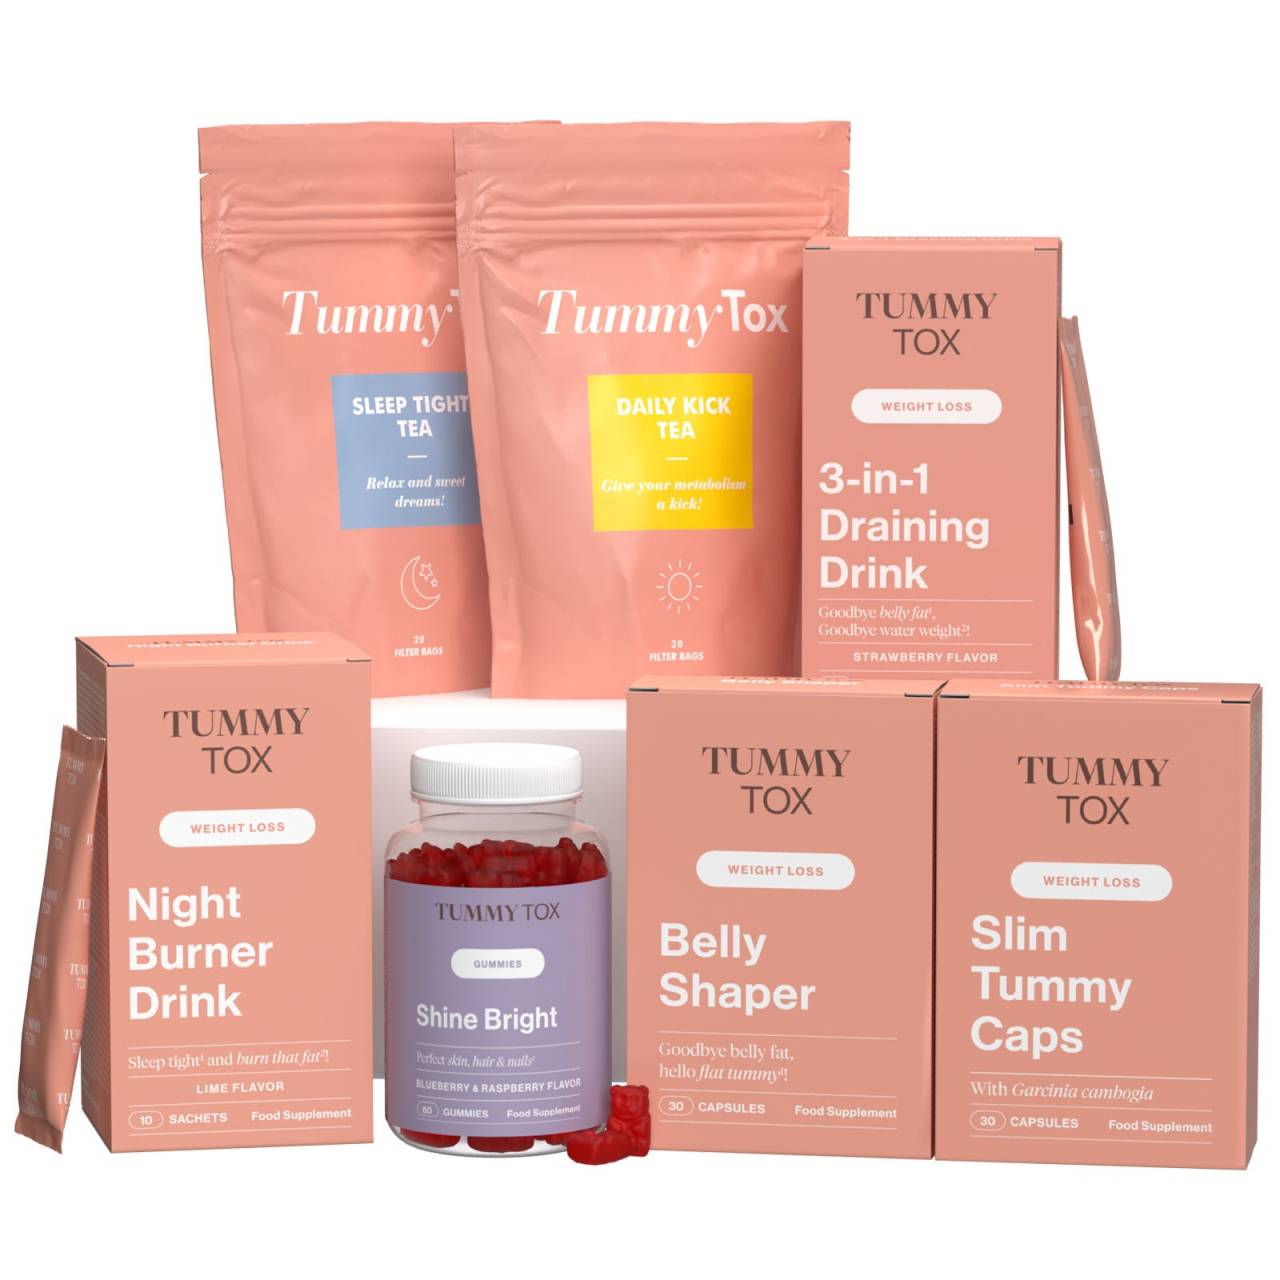 Endlich Schlank [60-Tage Programm] + Collagen Drink GRATIS: Abnehm-, Entgiftungs- und Beauty-Paket | TummyTox.